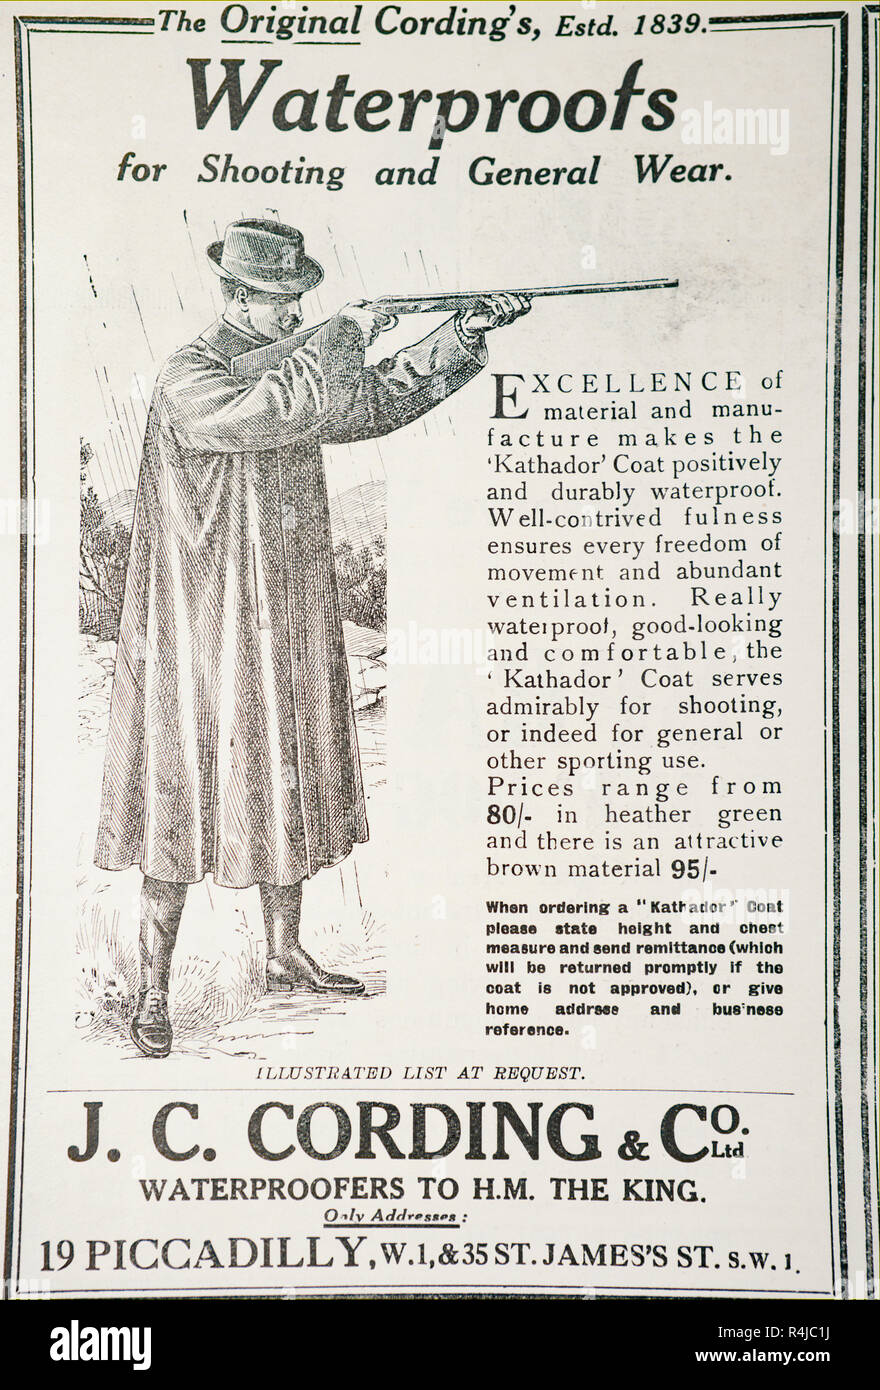 Eine alte Anzeige für J.C. Aufzeichnung & Co für wasserdichte Kleidung. Aus einem alten britischen Zeitschrift aus dem Zeitraum 1914-1919. Stockfoto